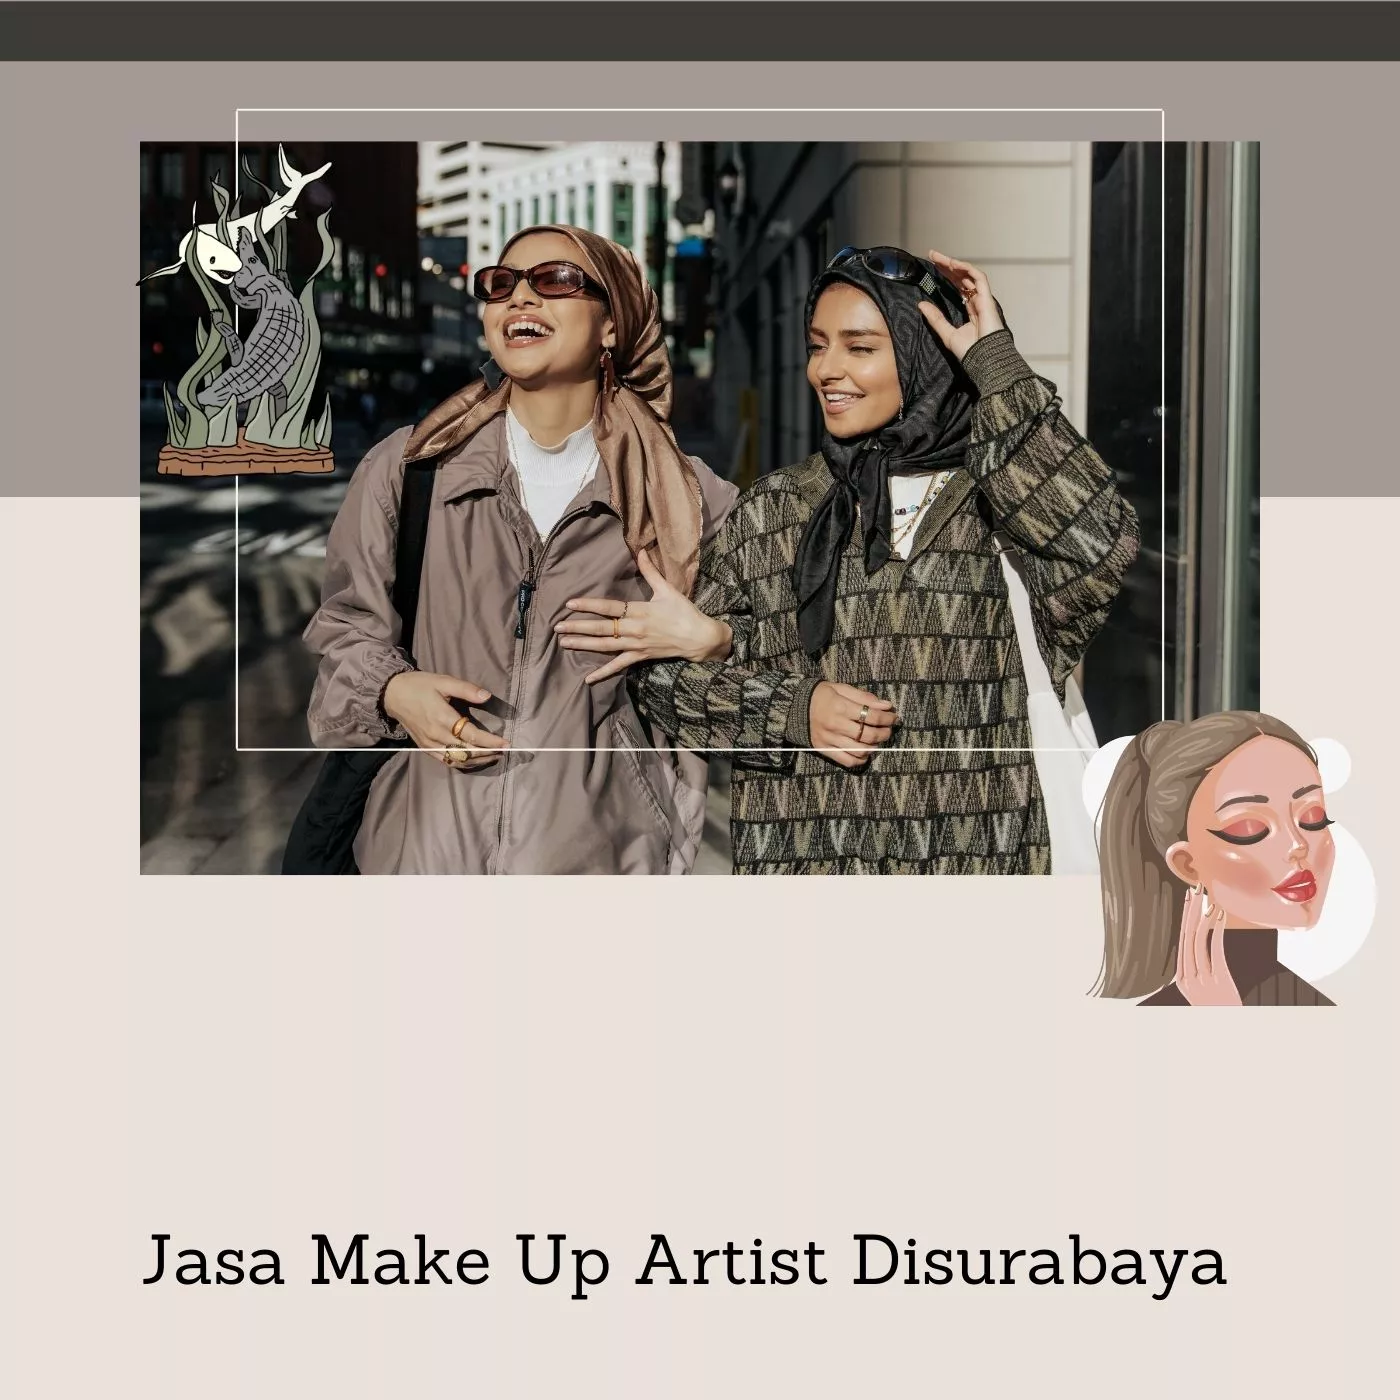 Jasa Make Up Artist  Disurabaya